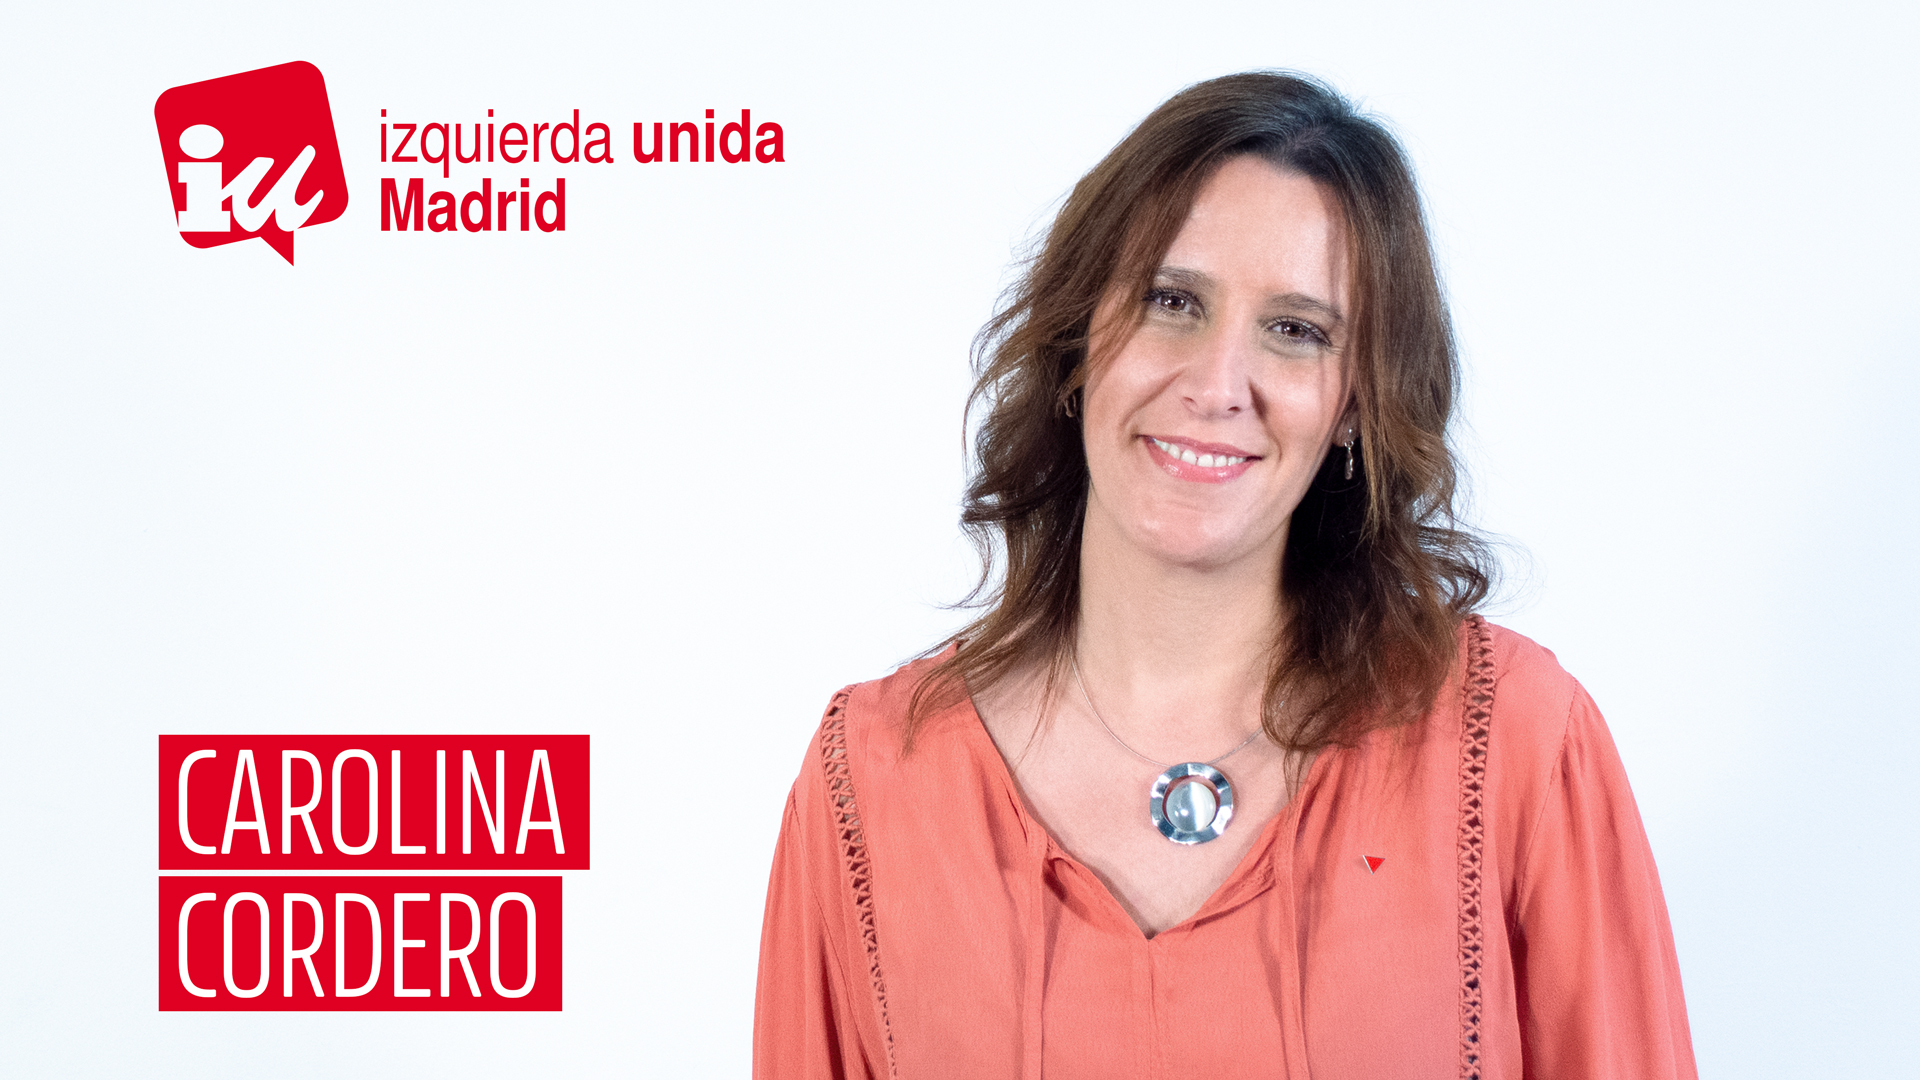 Carolina Cordero, candidata de IU Madrid y nº 2 de nuestra coalición